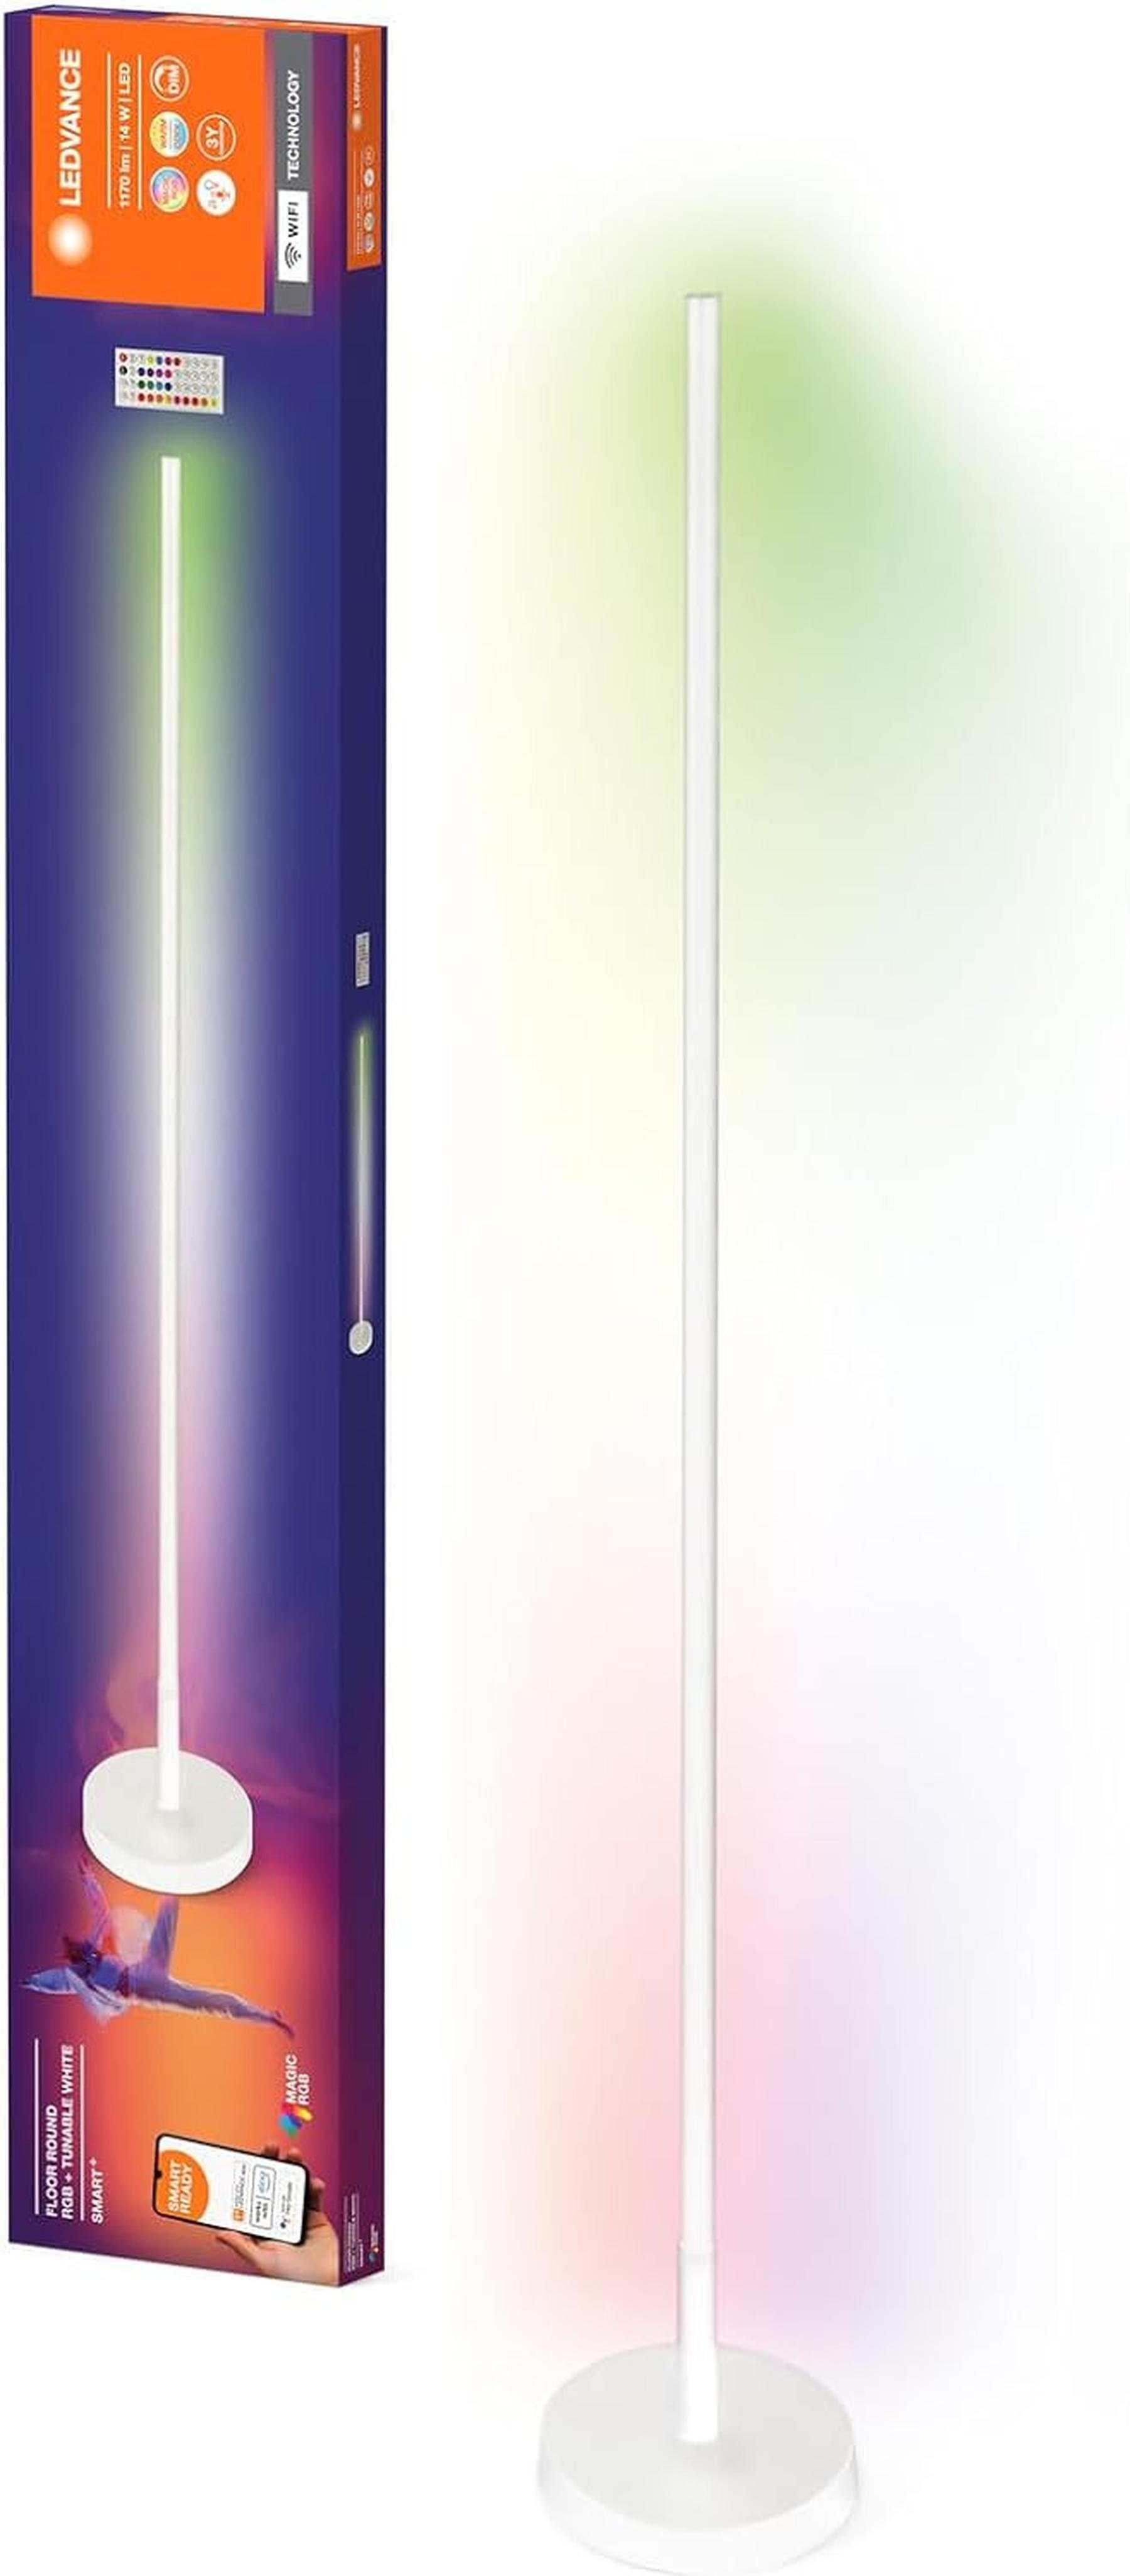 dimmbar WIFI 1170lm dimmbar, LED & SMART+ weiß, Stehleuchte, regulierbares 14W, Farblicht, Weiß- rund, Ledvance LEDVANCE Stehlampe